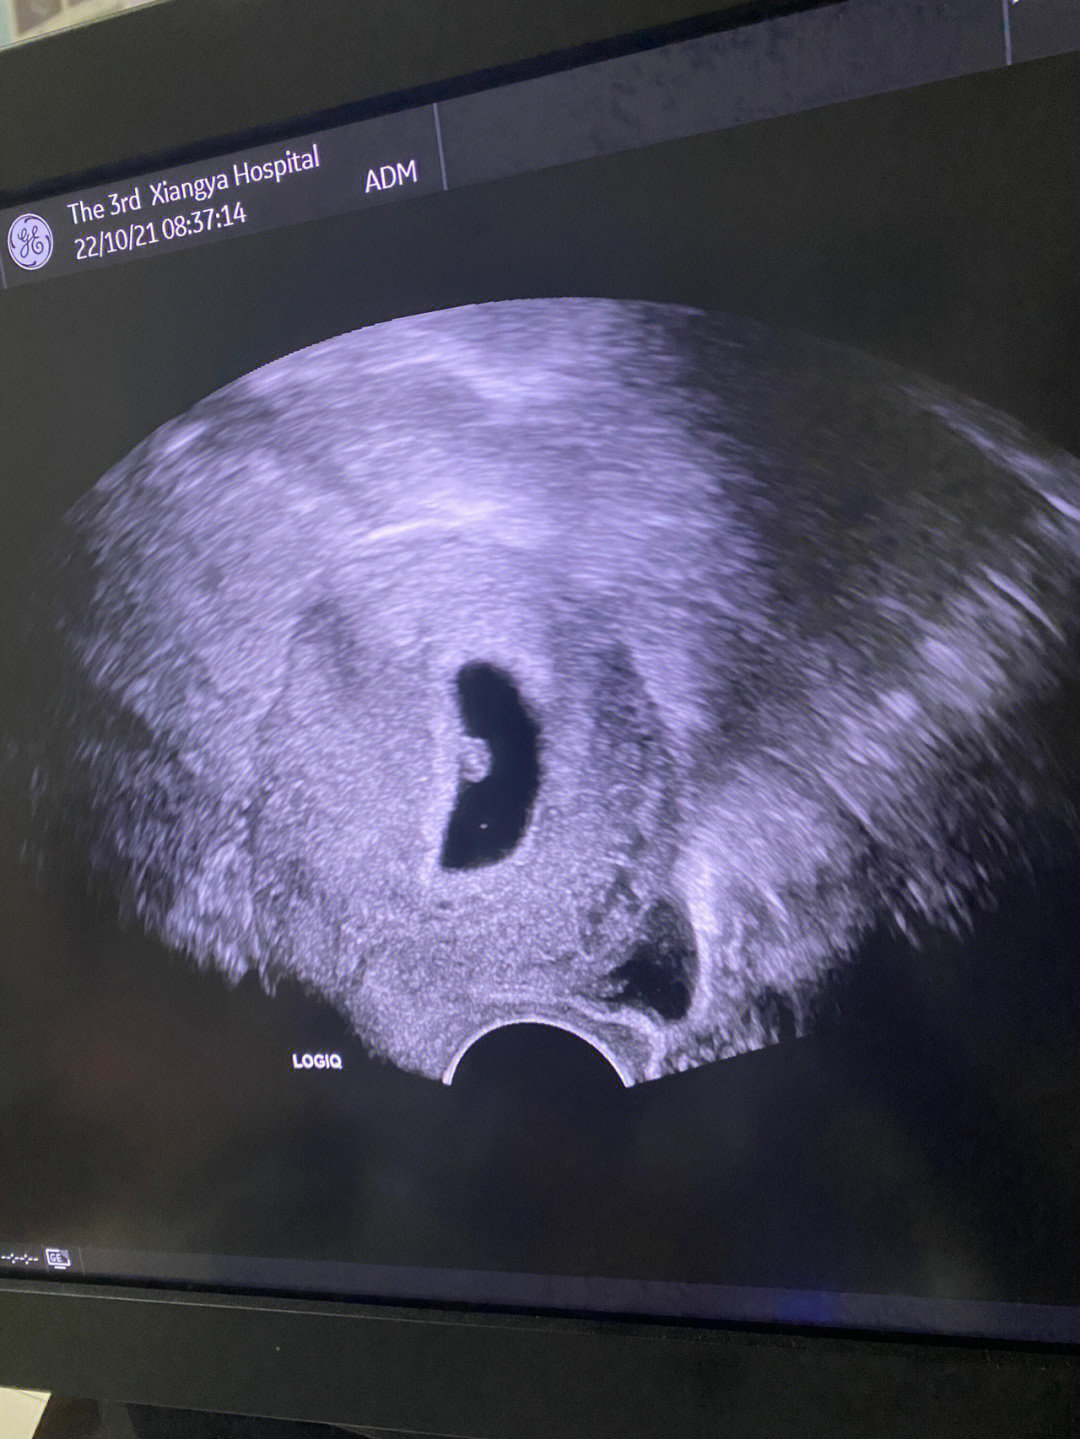 胎心胎芽图图片